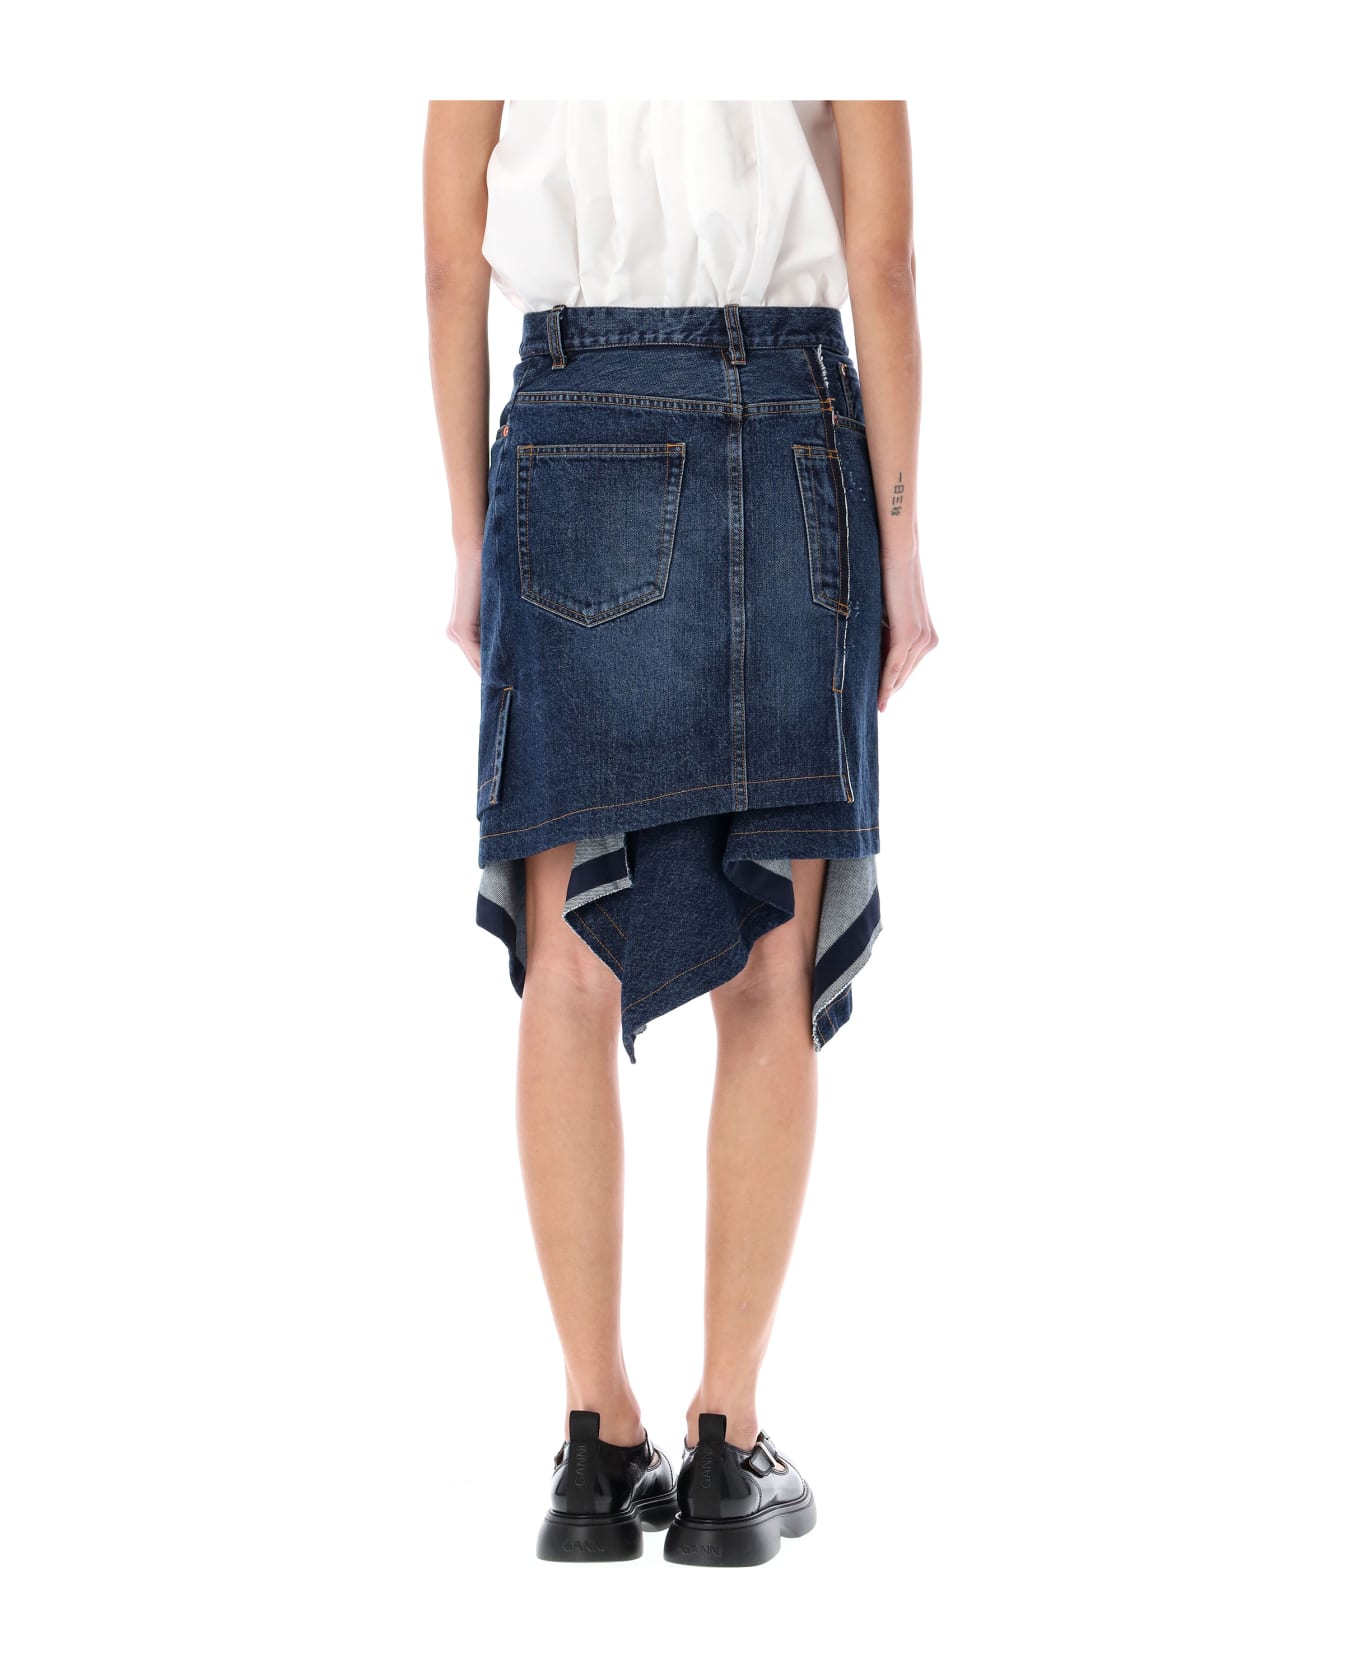 Sacai Denim Skirt - BLUE スカート